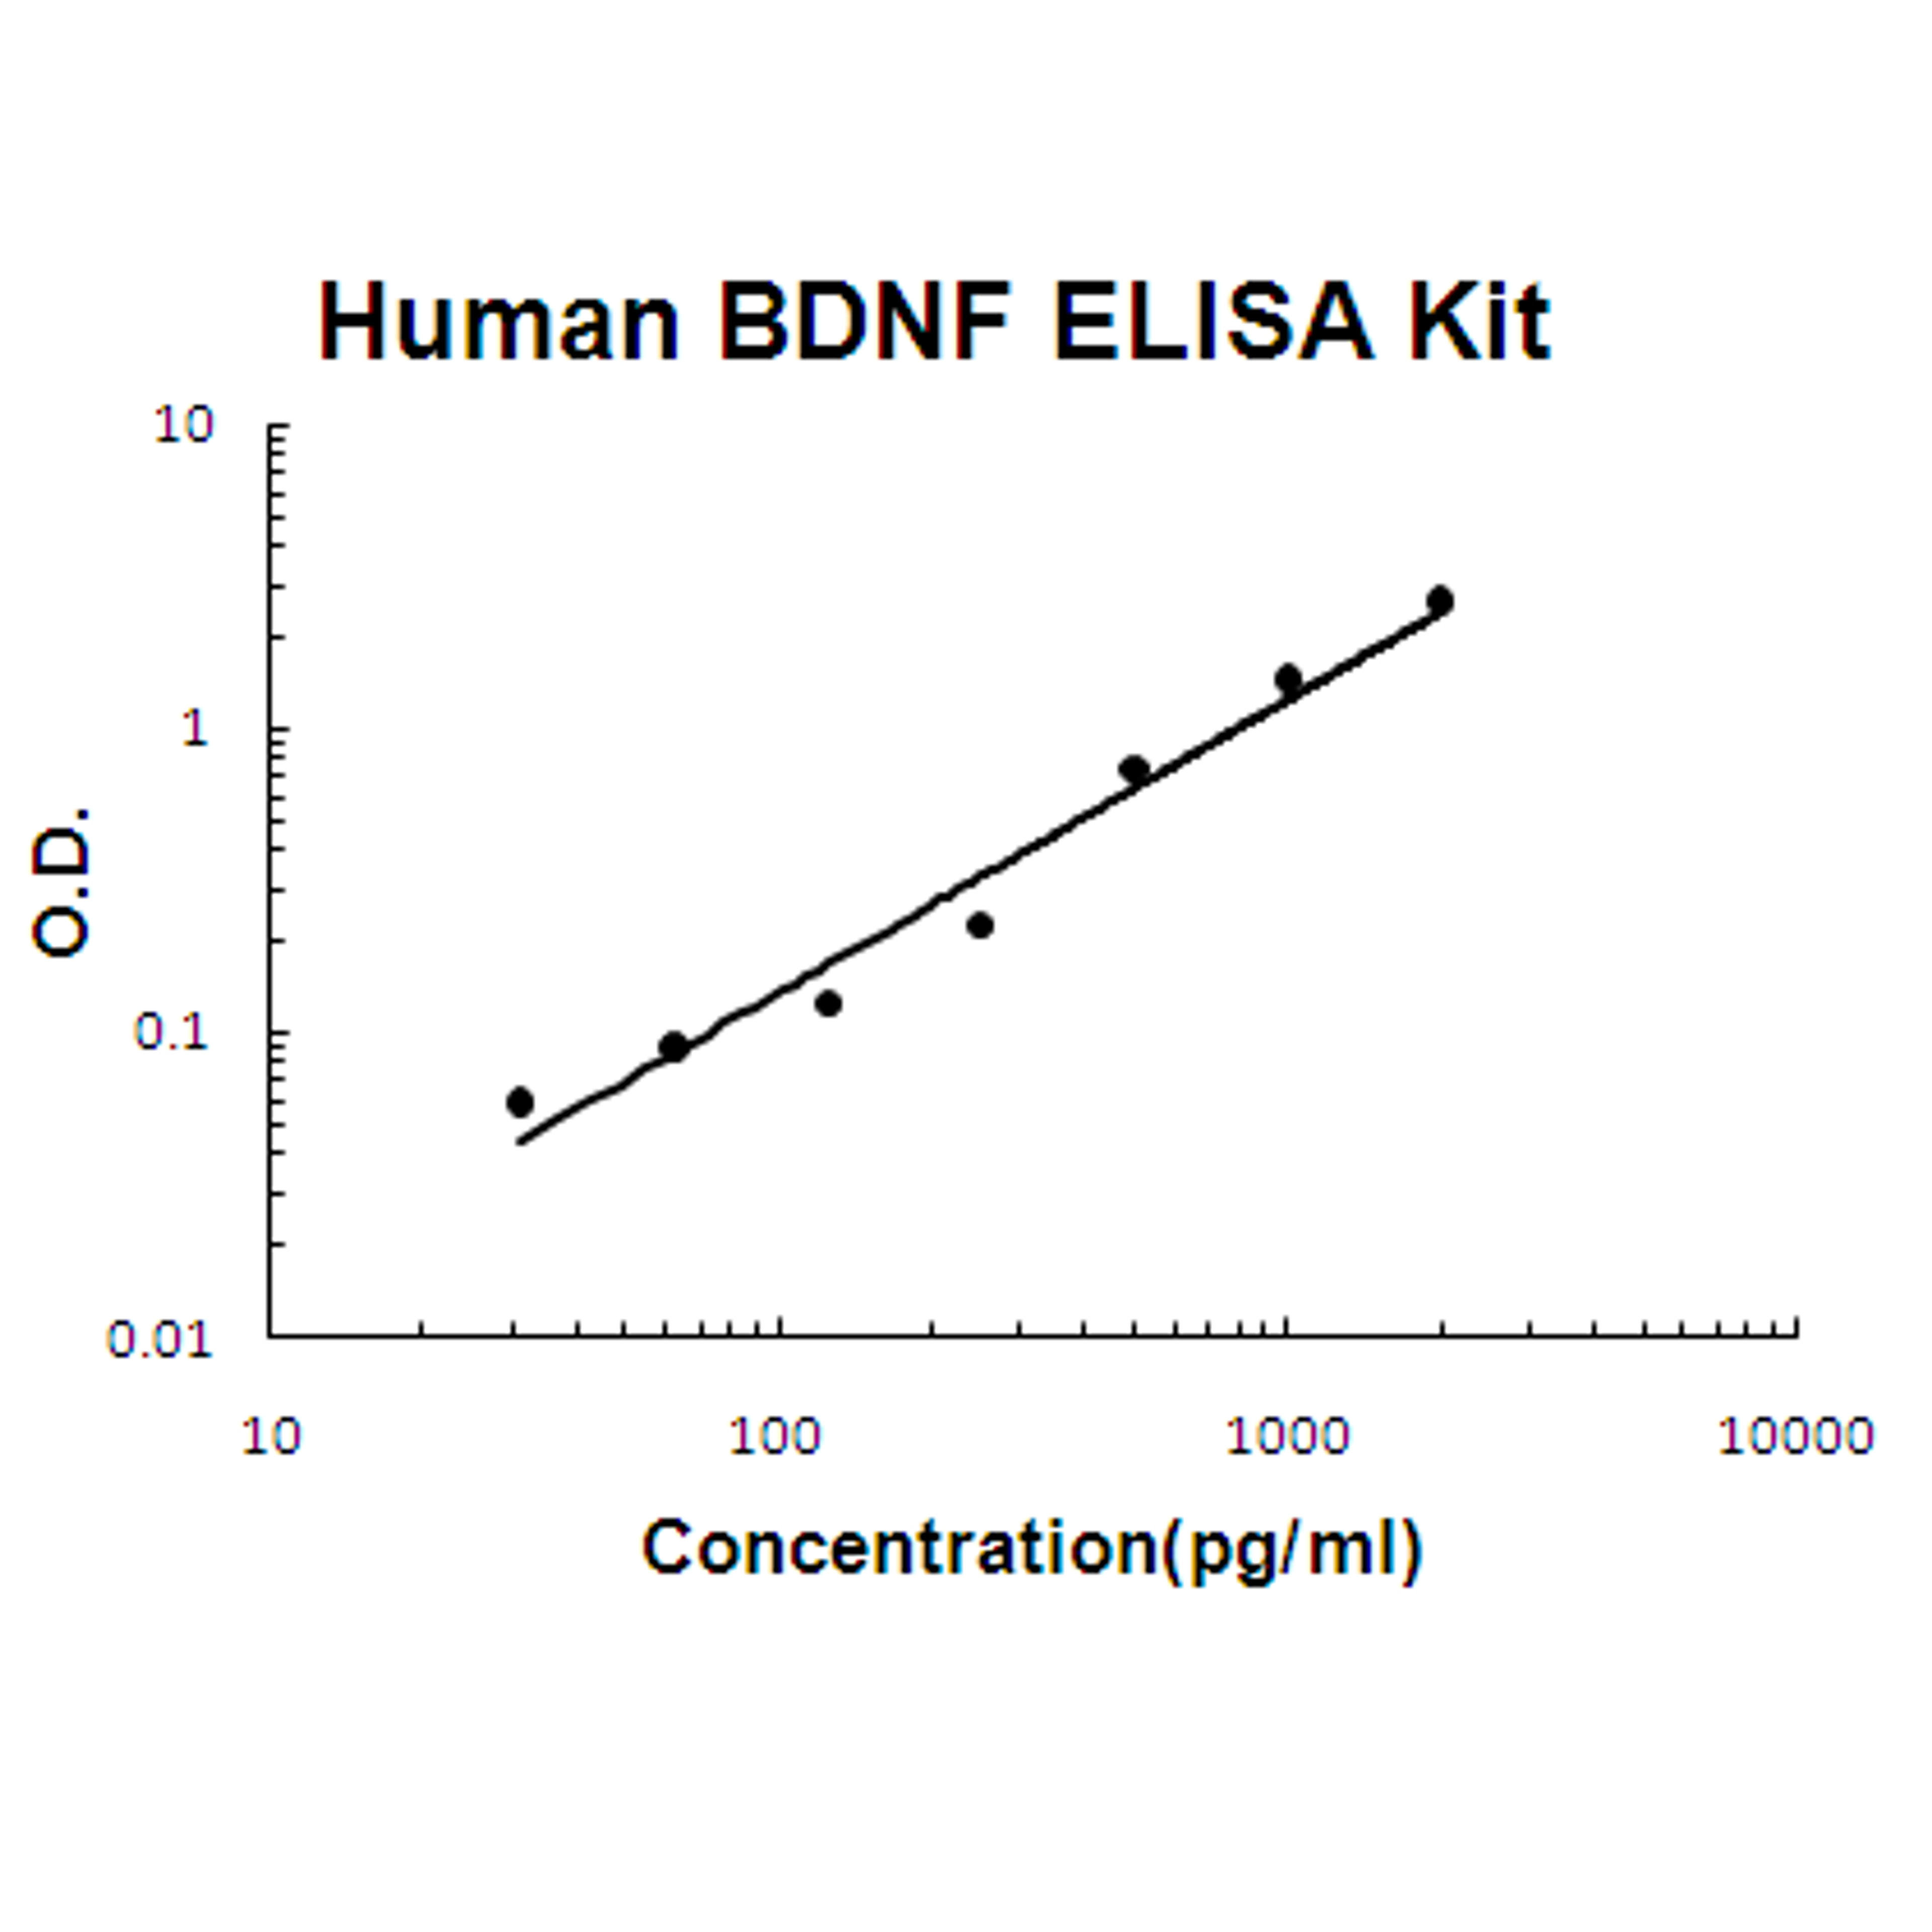 Human BDNF PicoKine ELISA Kit standard curve